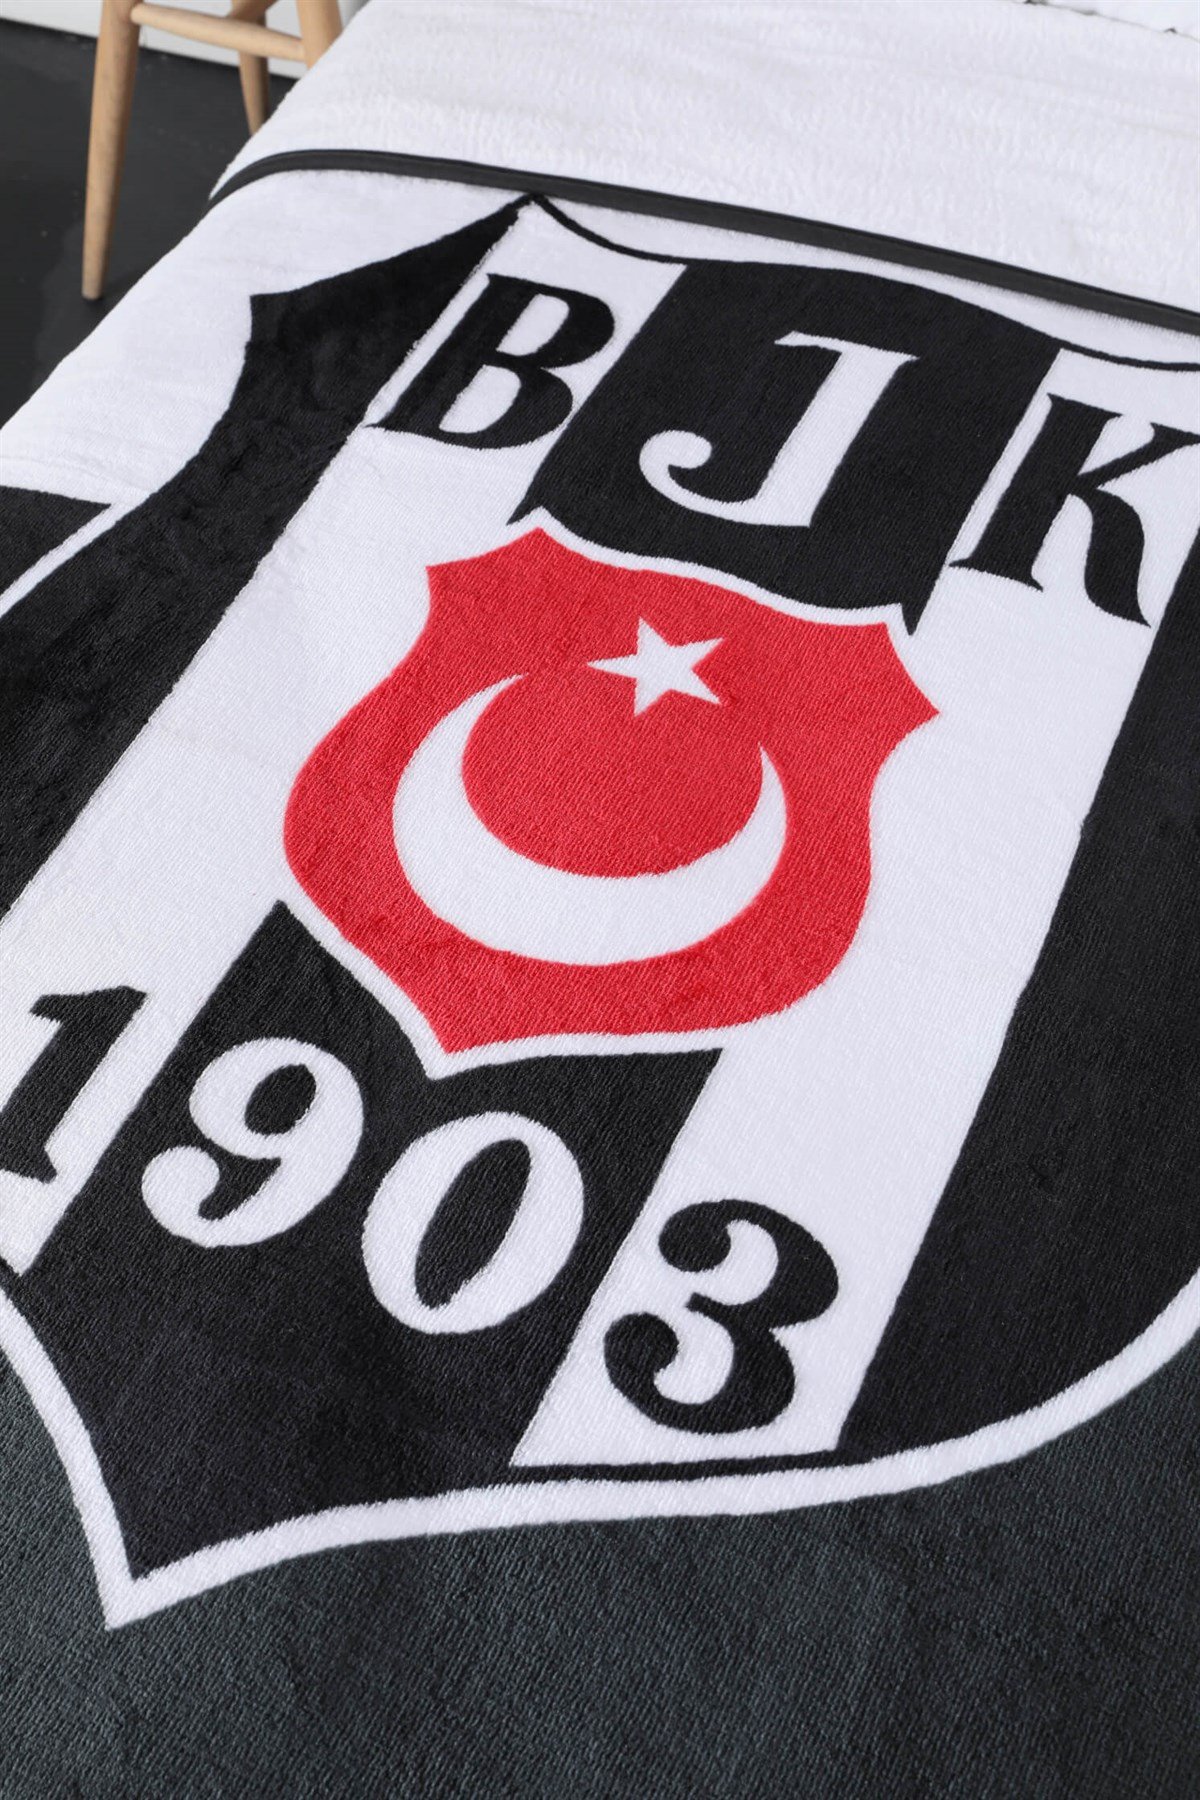 Taç Lisanslı Beşiktaş 1903 Logo Tek Kişilik Battaniye - Siyah - Beyaz |  Favora Home